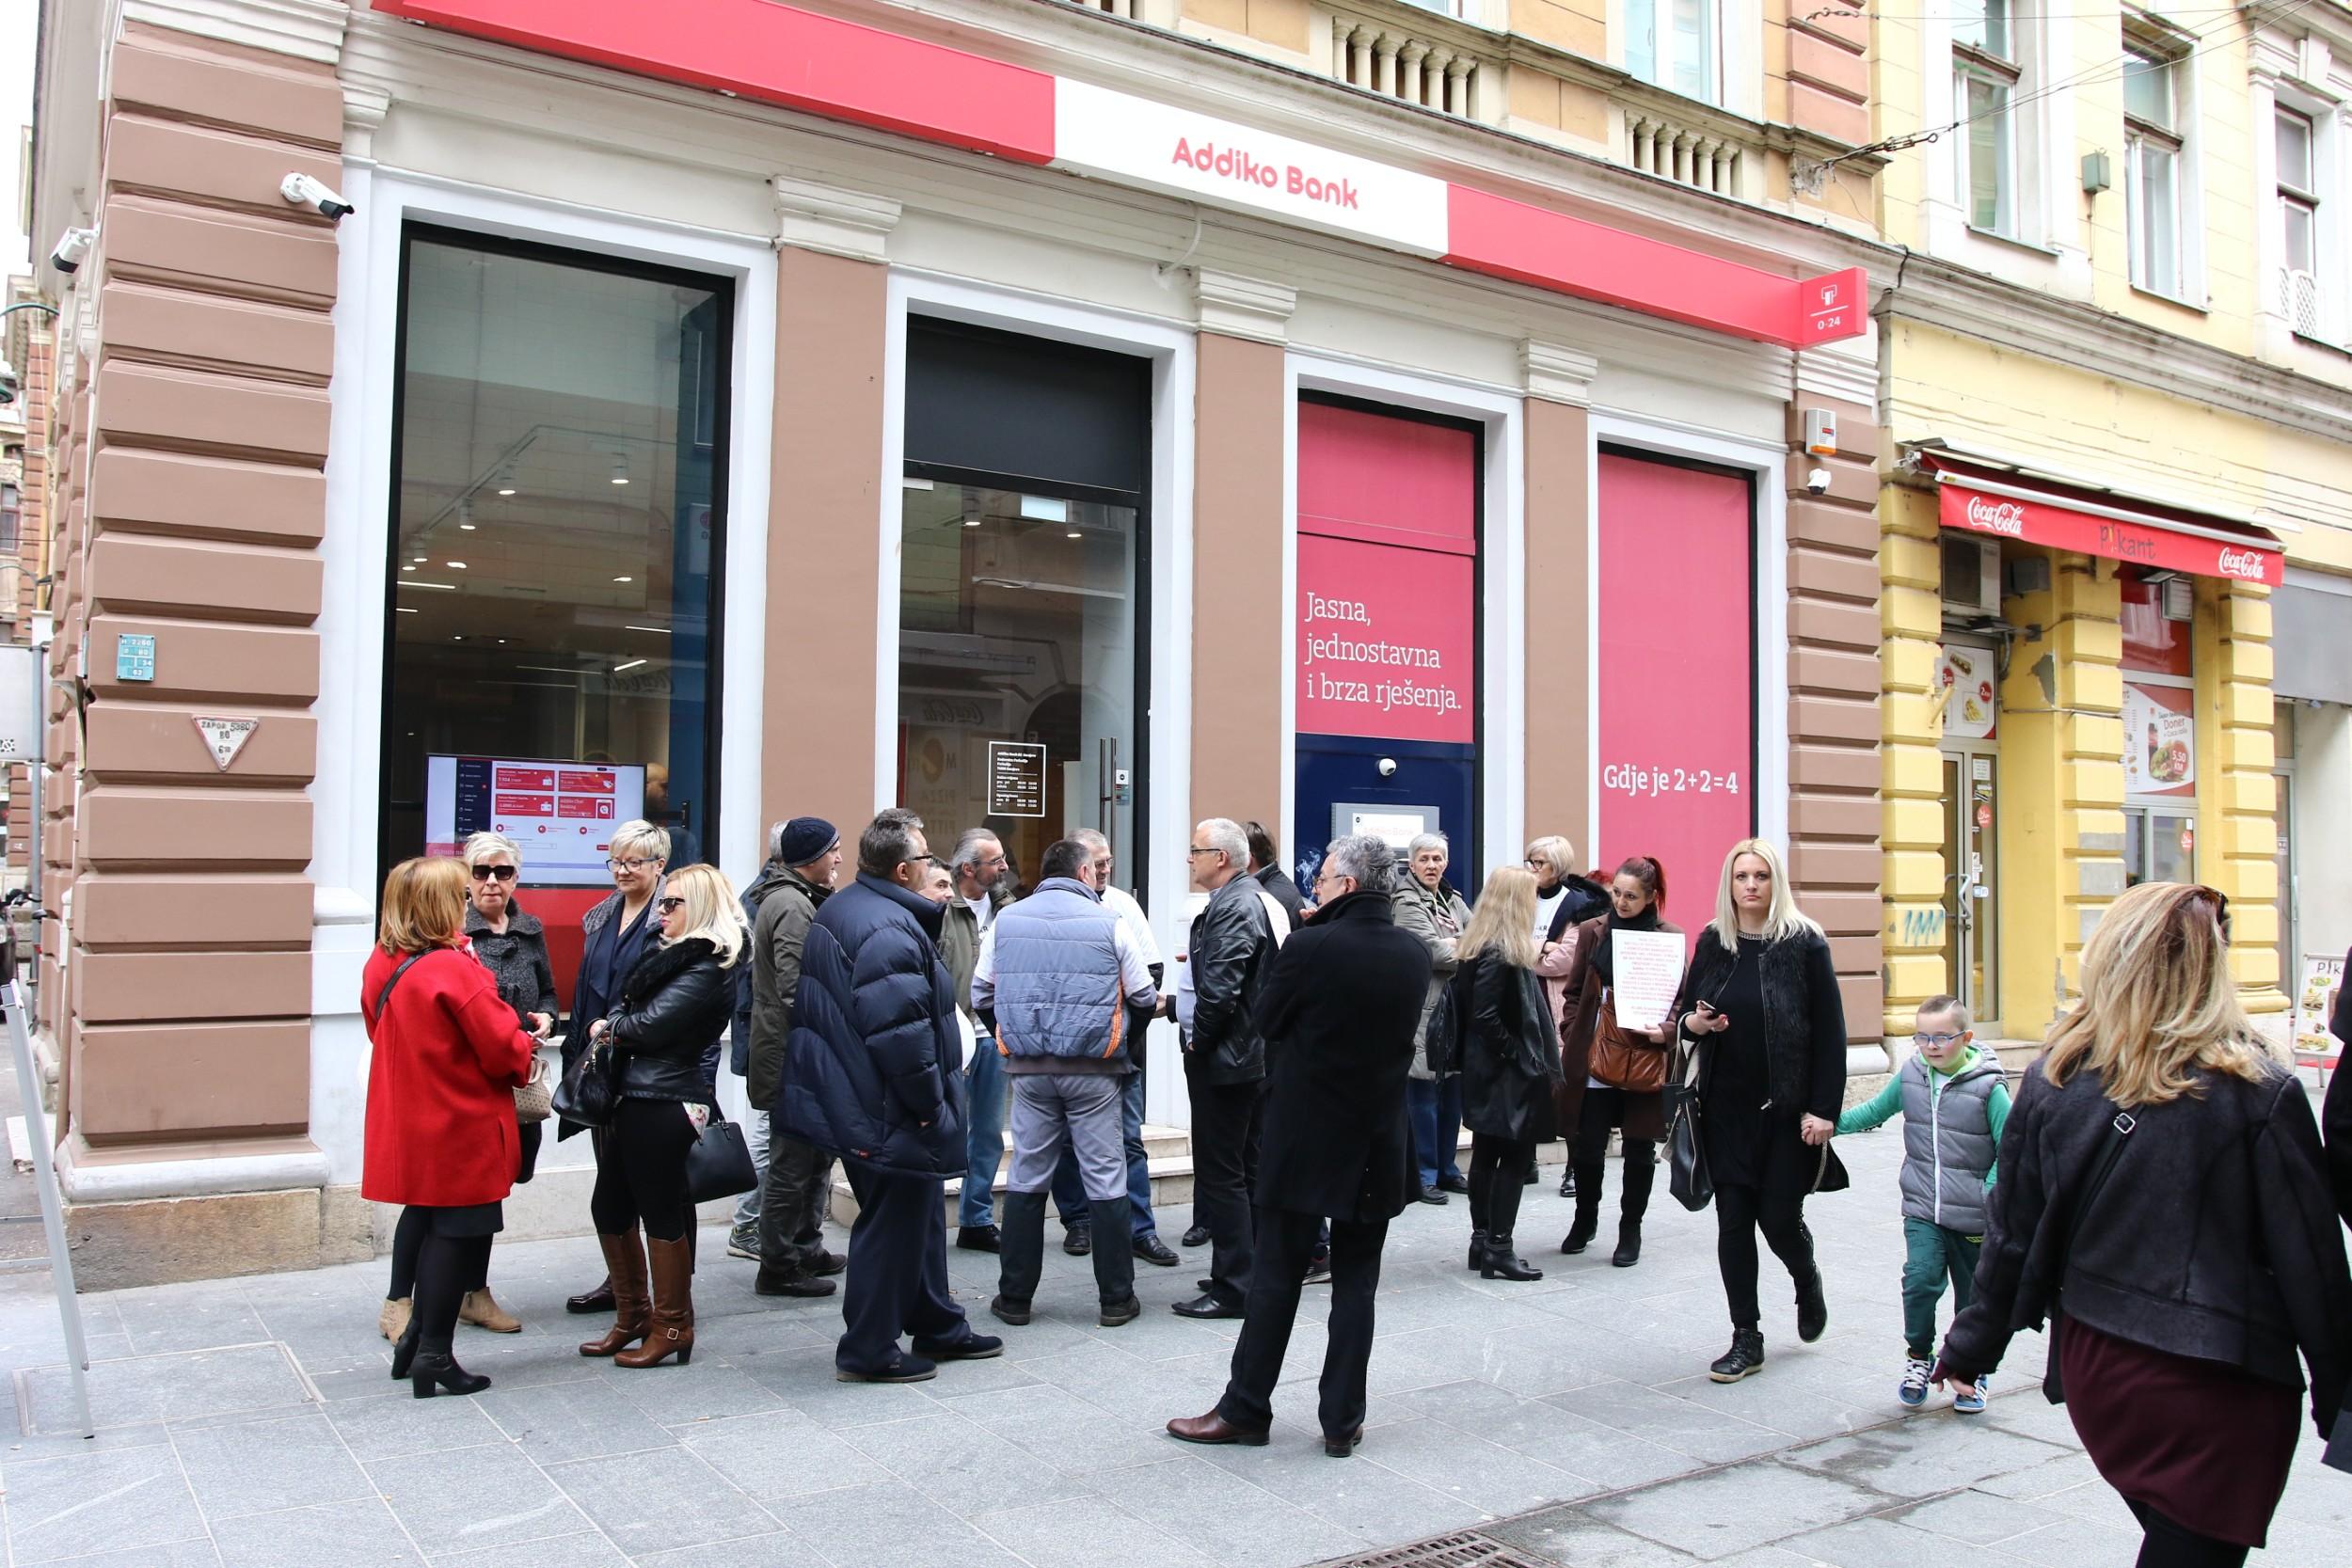 "Švicarci" opet blokirali poslovnice Addiko banke: Nesposobna Vlada ništa nije uradila za nas